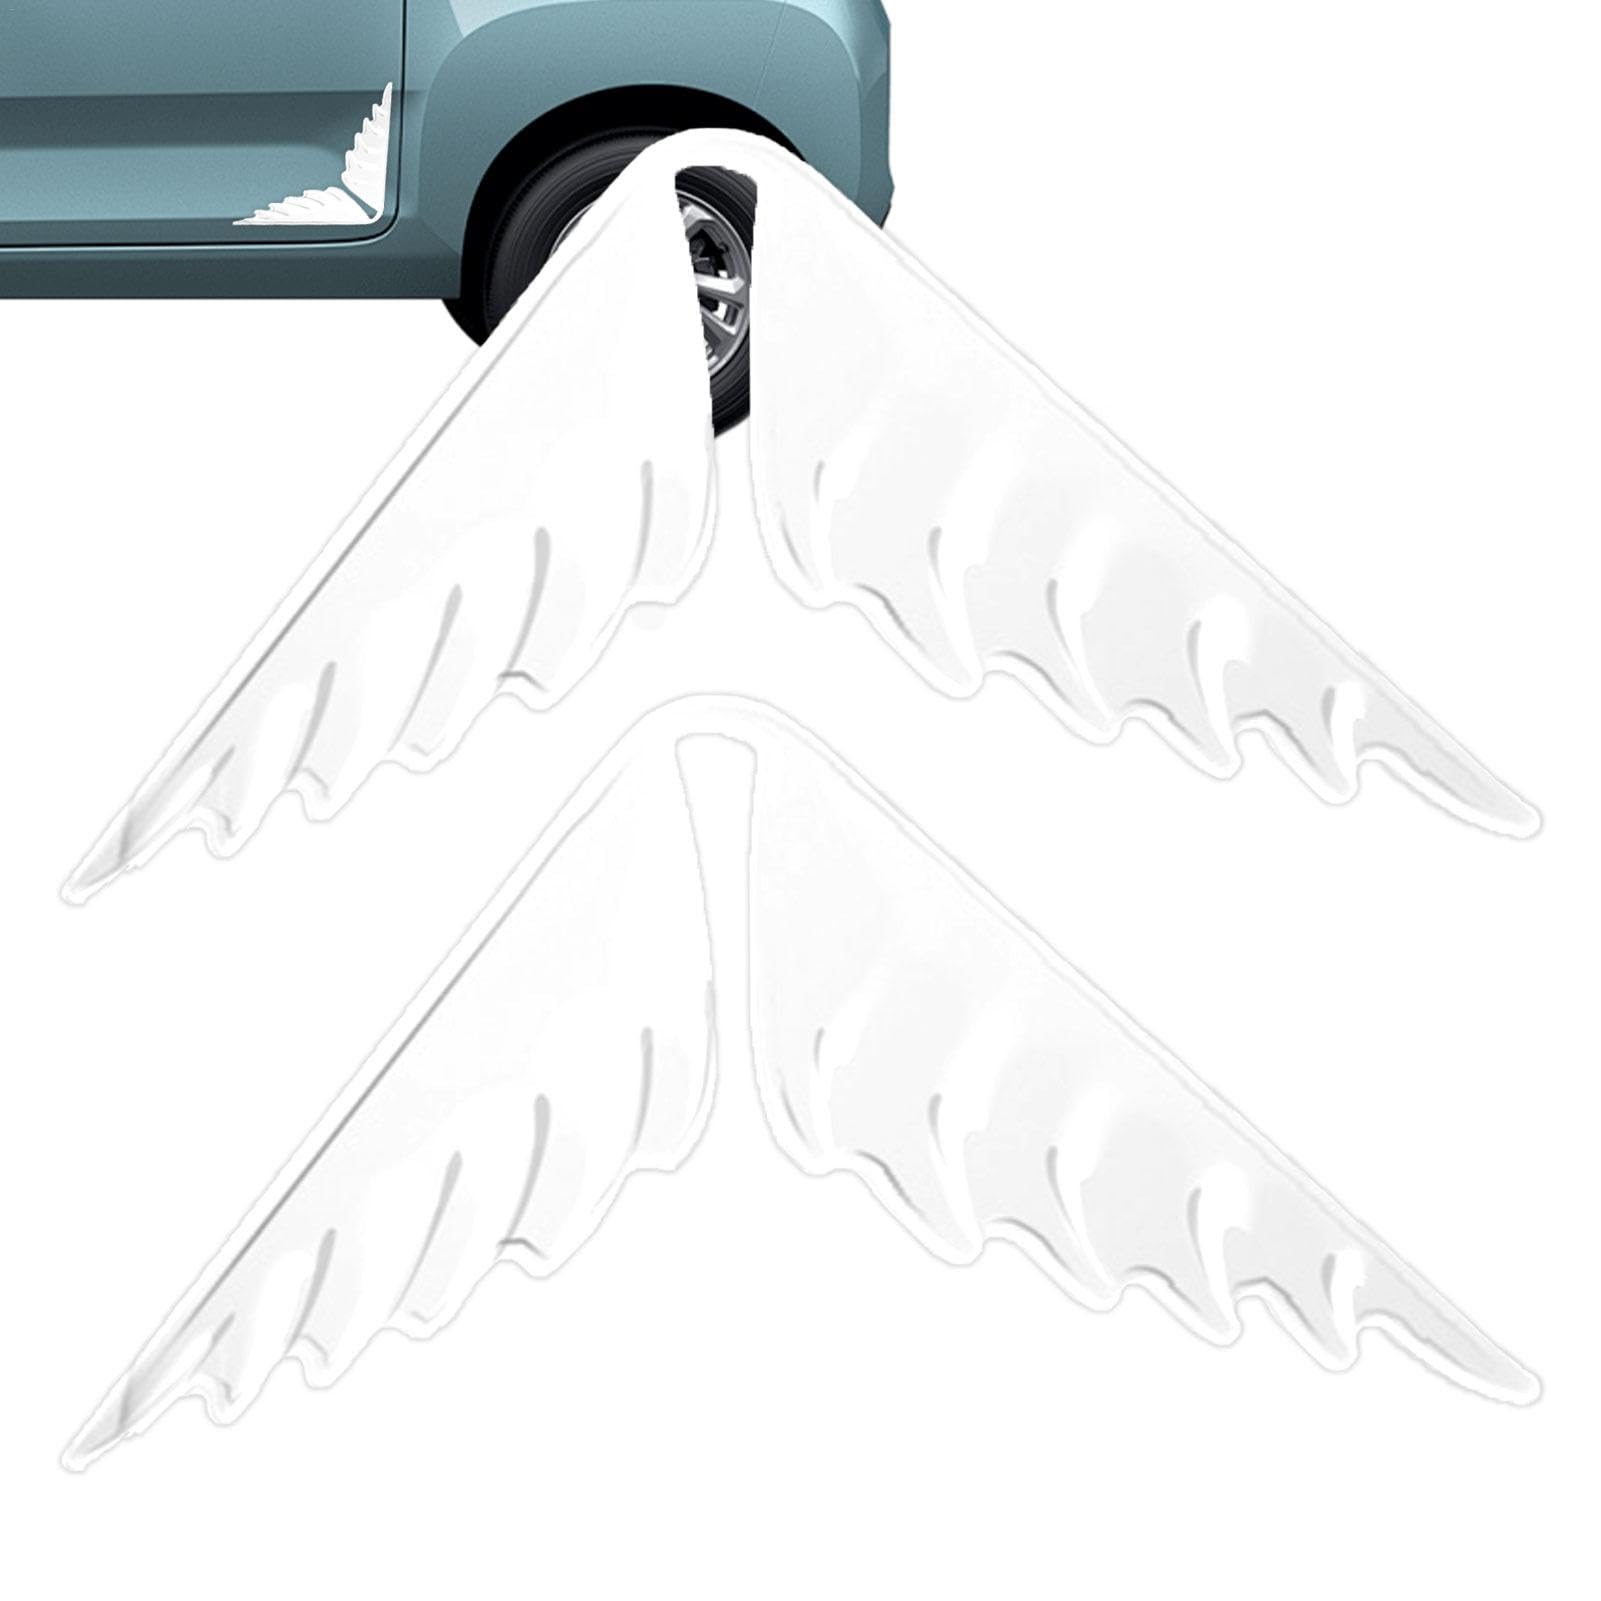 Tioheam Türschutz für Autos,Autotürschutz,2 Stück Autotüreckenschutz in Flügelform - Kfz-Türkantenaufkleber, selbstklebendes Autotüreckenschutz-Zubehör für Autos von Tioheam